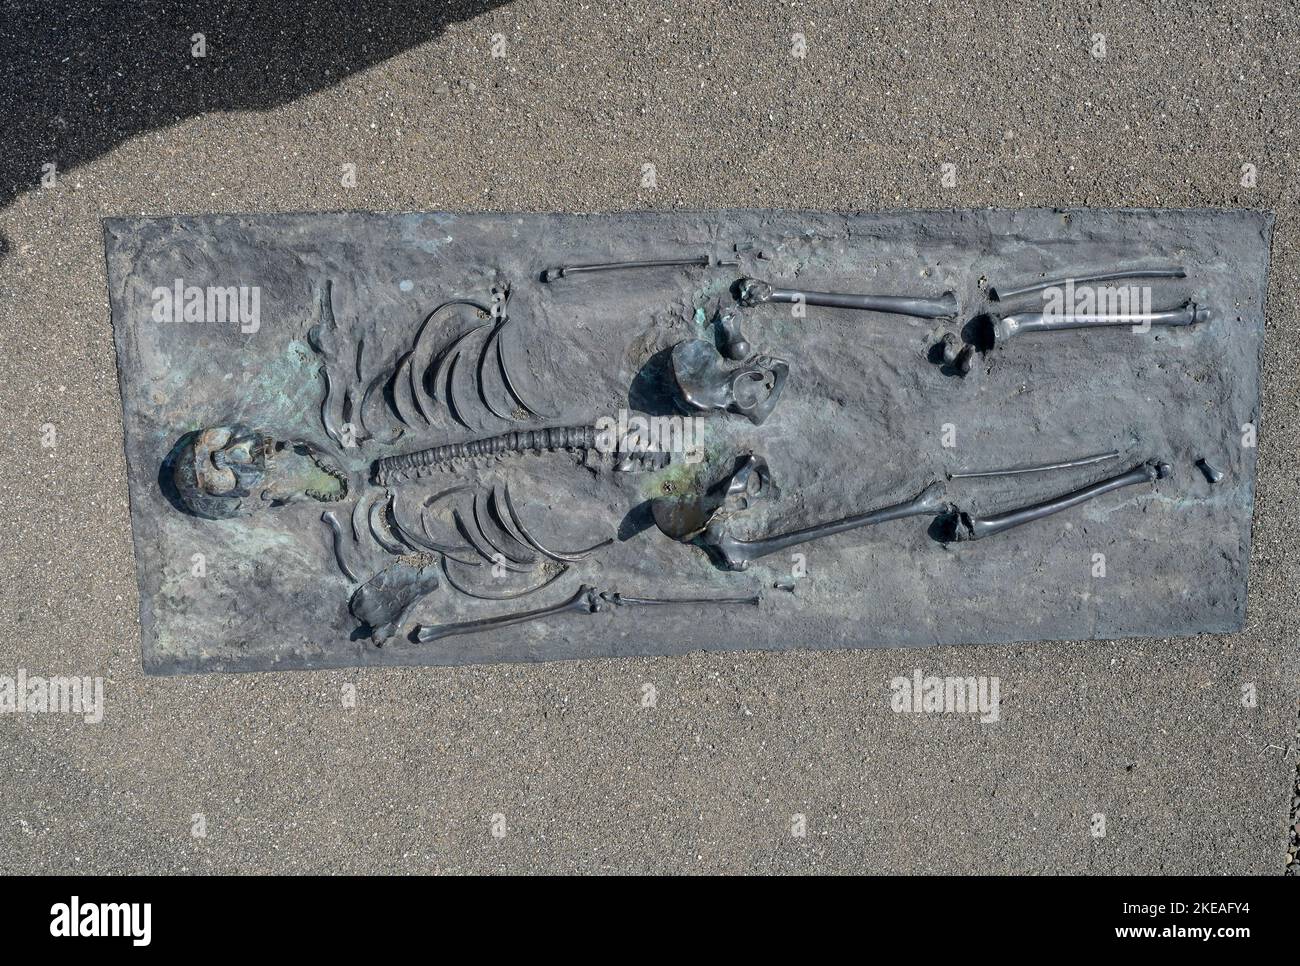 KENYA, Turkana, aldea Nariokotome, sitio de excavación de Turkana Boy, también llamado Nariokotome Boy, es el nombre dado al fósil KNM-WT 15000, un esqueleto casi completo de un joven homo ergaster que vivió hace 1,5 a 1,6 millones de años. Fue descubierto en 1984 por Kamoya Kimeu en la orilla del río Nariokotome, cerca del lago Turkana en Kenia, réplica de bronce / KENIA, Turkana, Dorf Nariokotome, Ausgrabungsstätte und Fundort des 'Turkana Boy', ein 1,6 Milliichonen Jahre altes menschliches Skelett, Nariokotome-as ezeines Männlichen, fósiles Jugendlichen Individuums der Gattung Homo Ergas Foto de stock